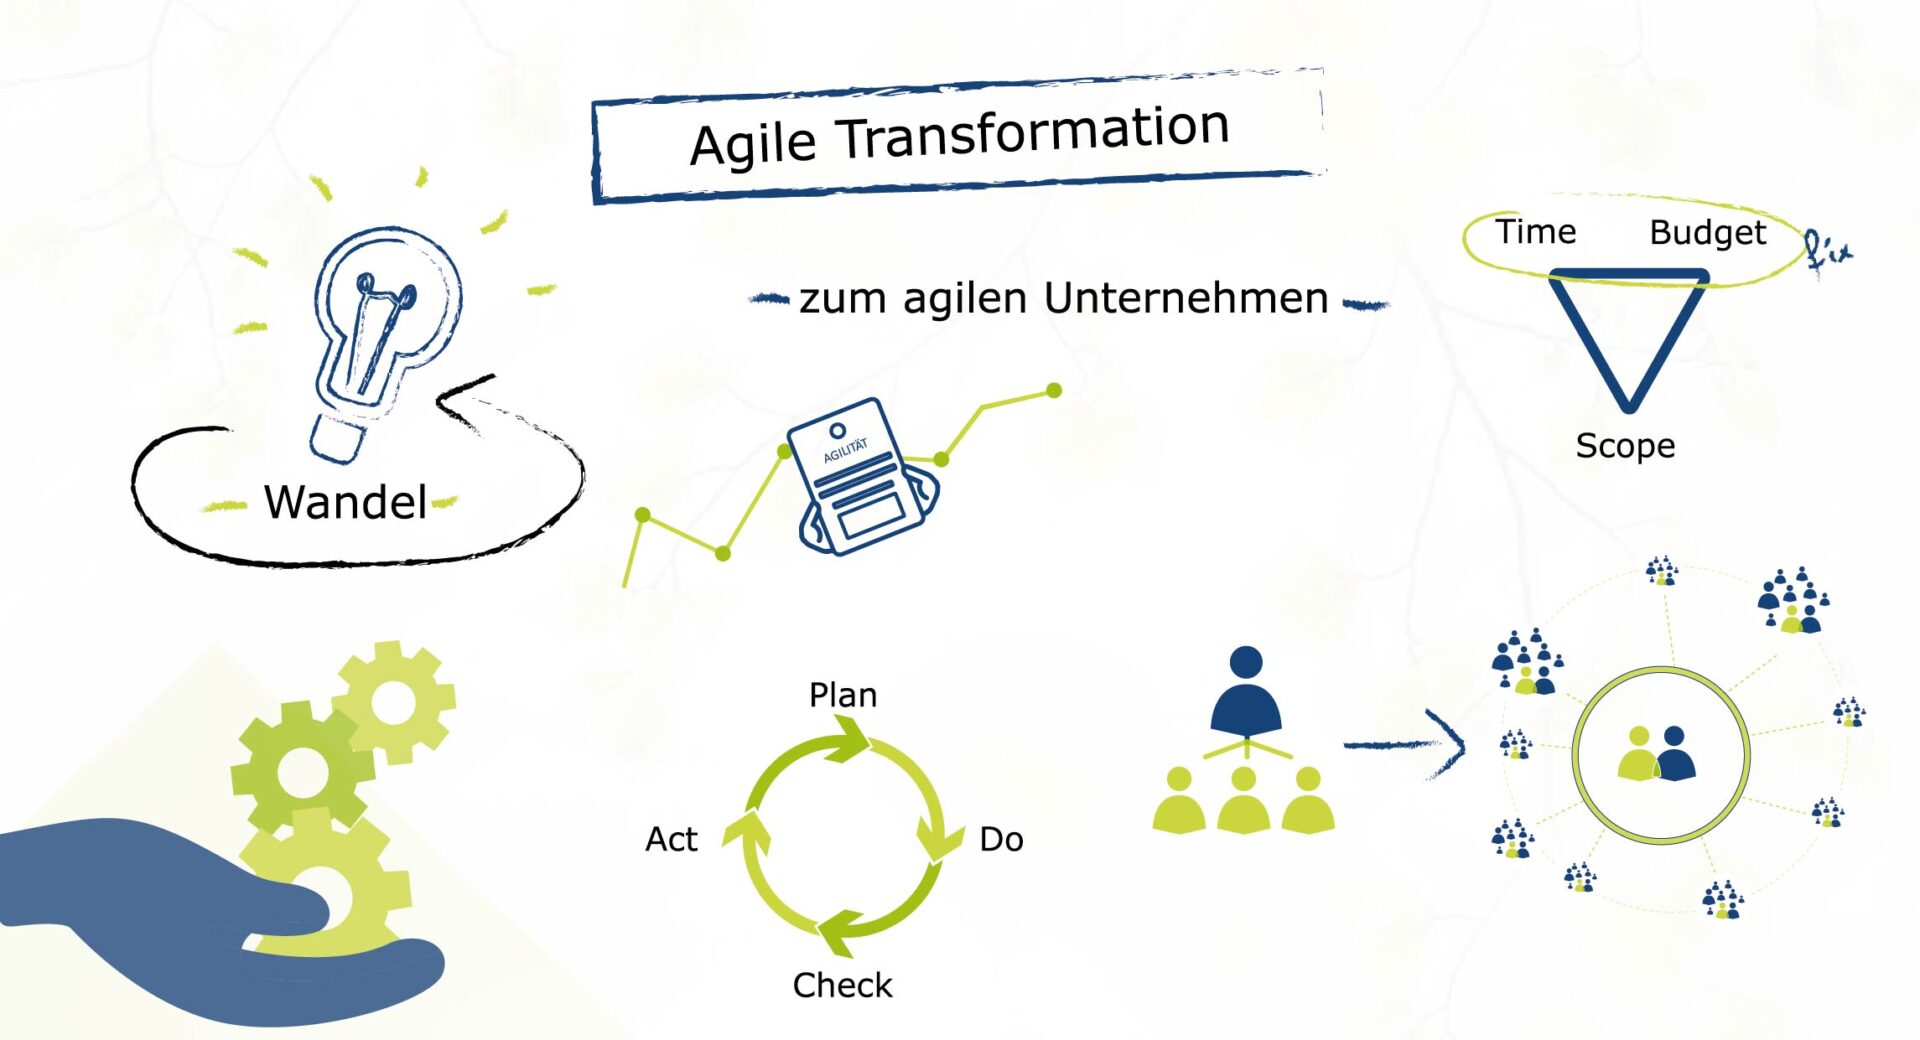 AgileTransformation